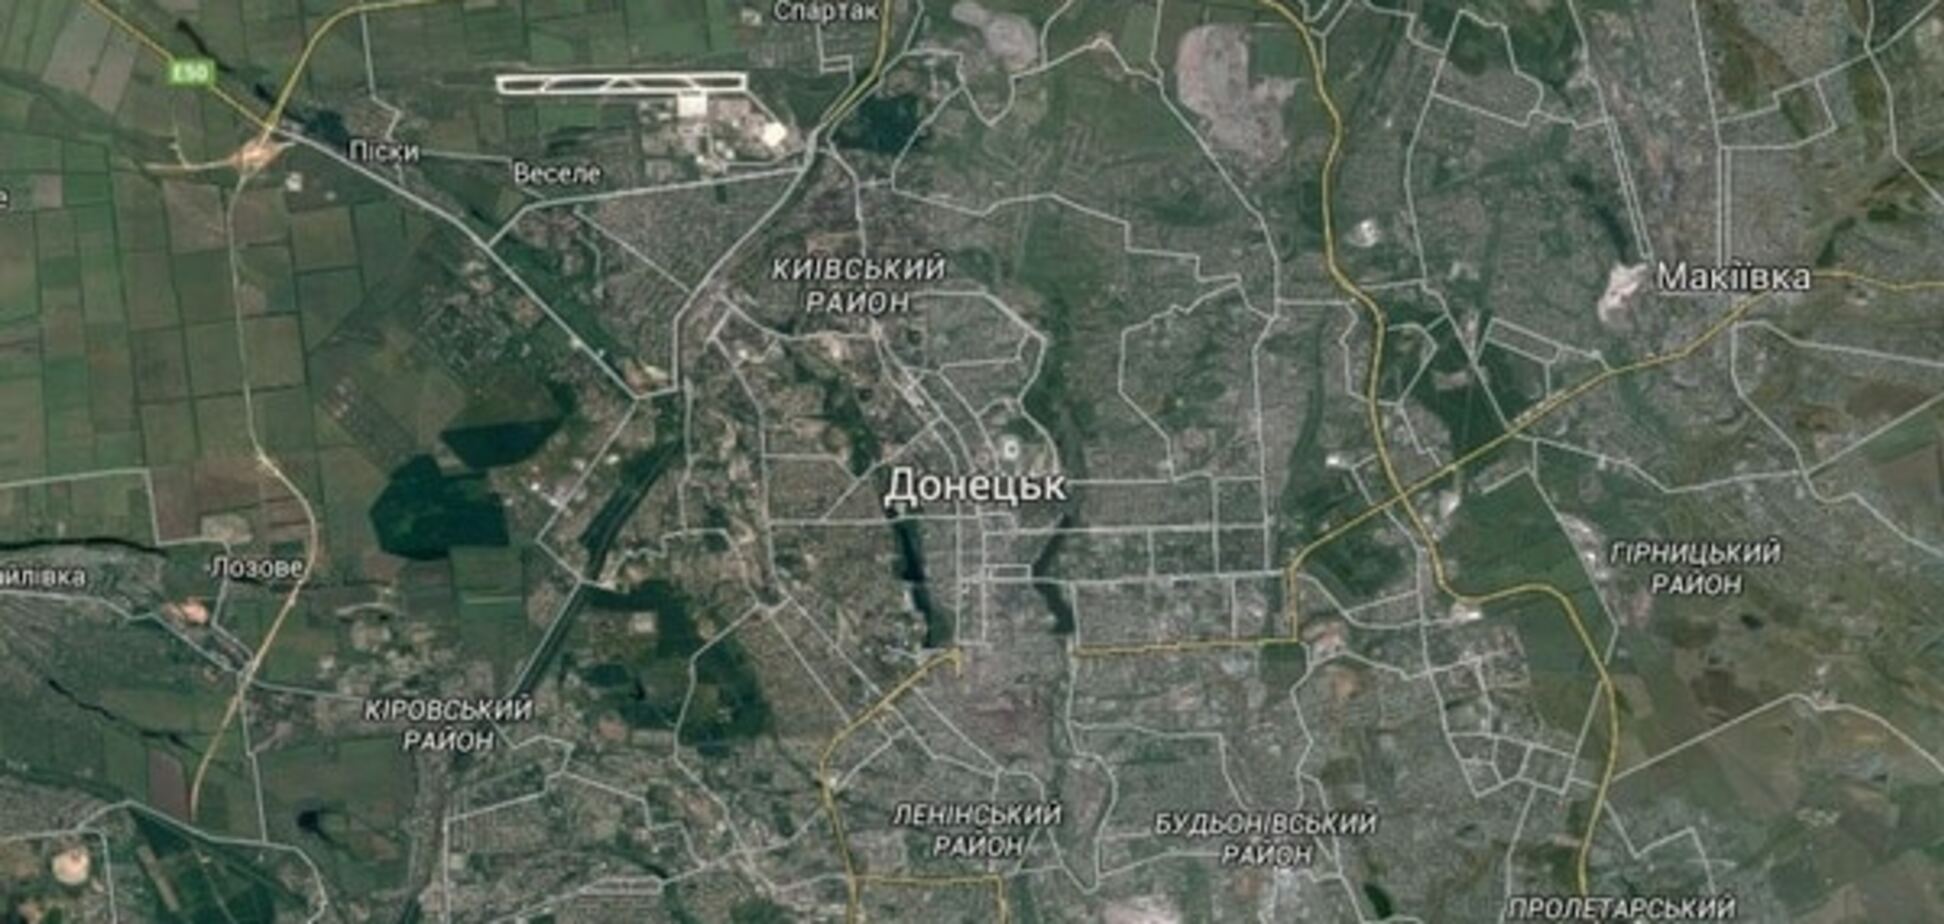 Фото Донецька з супутника